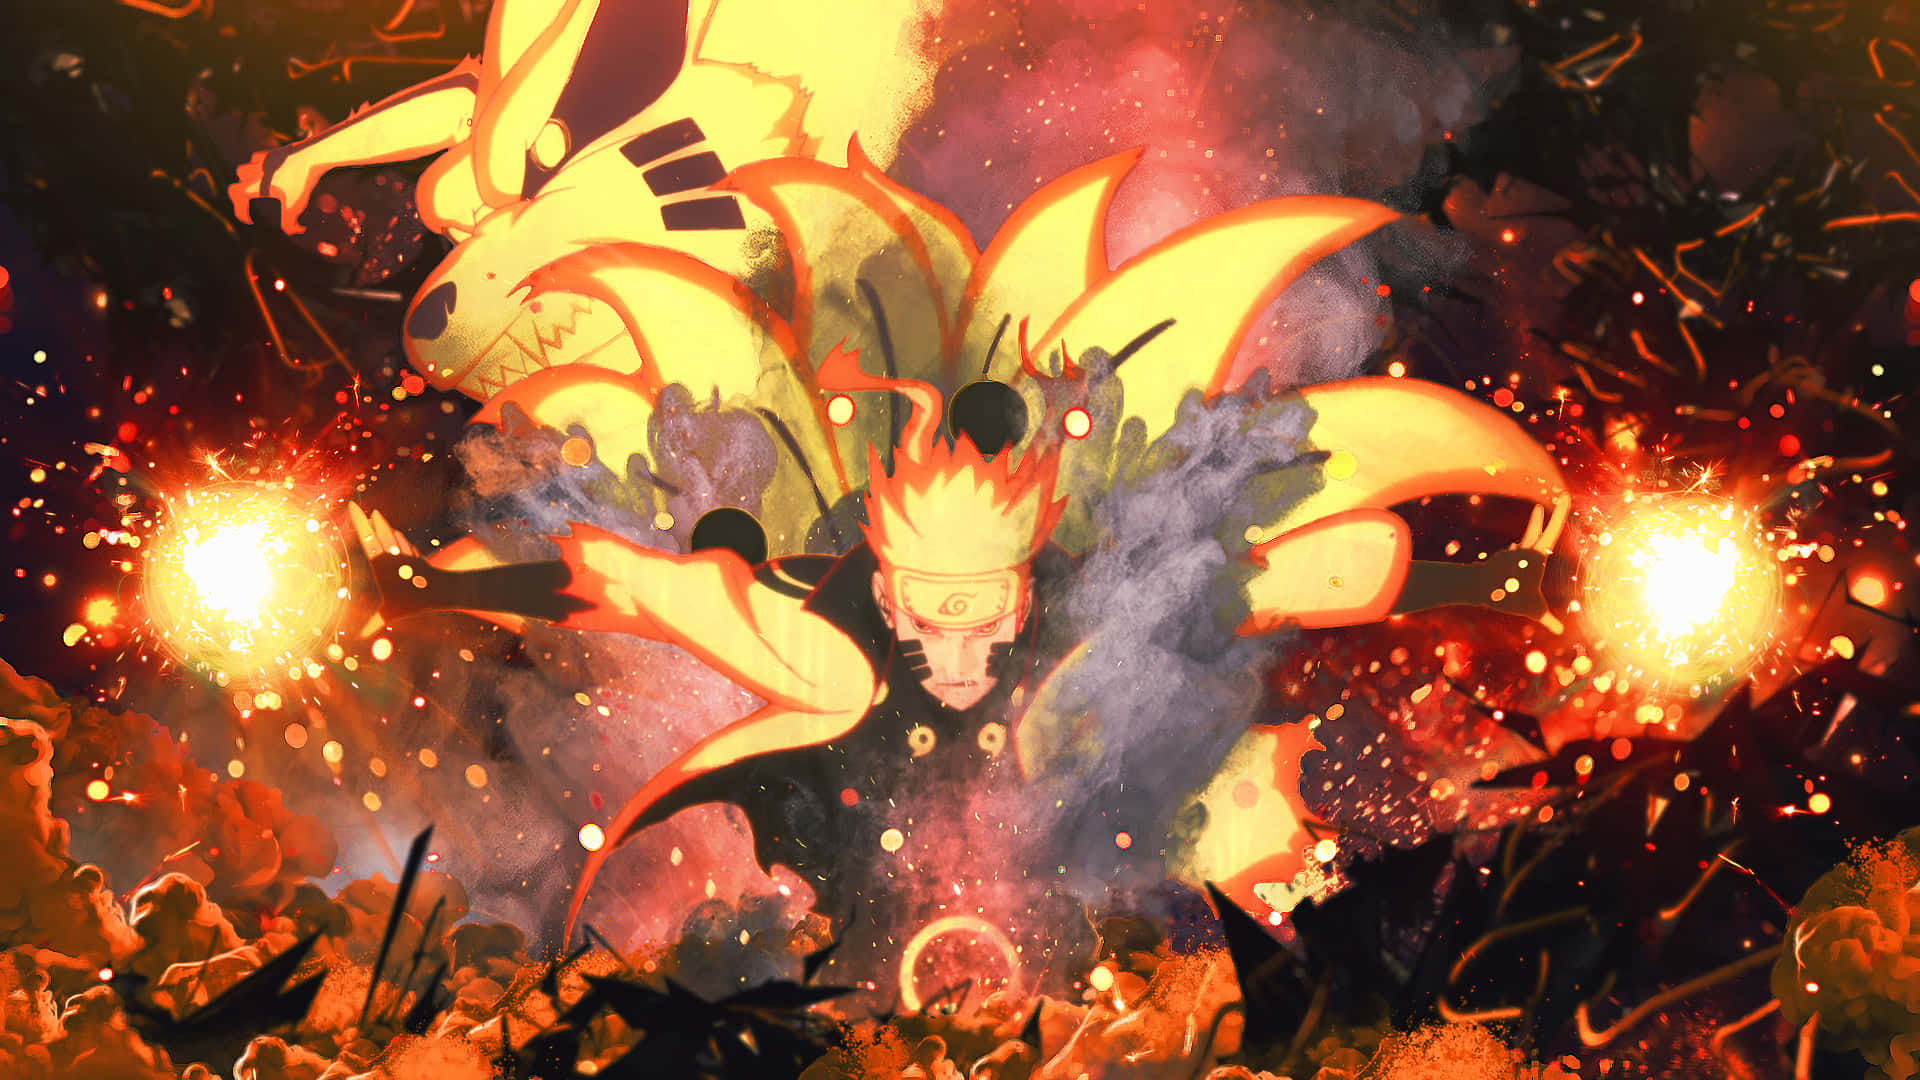 Vandet af ilden brænder stærkt - Naruto. Wallpaper